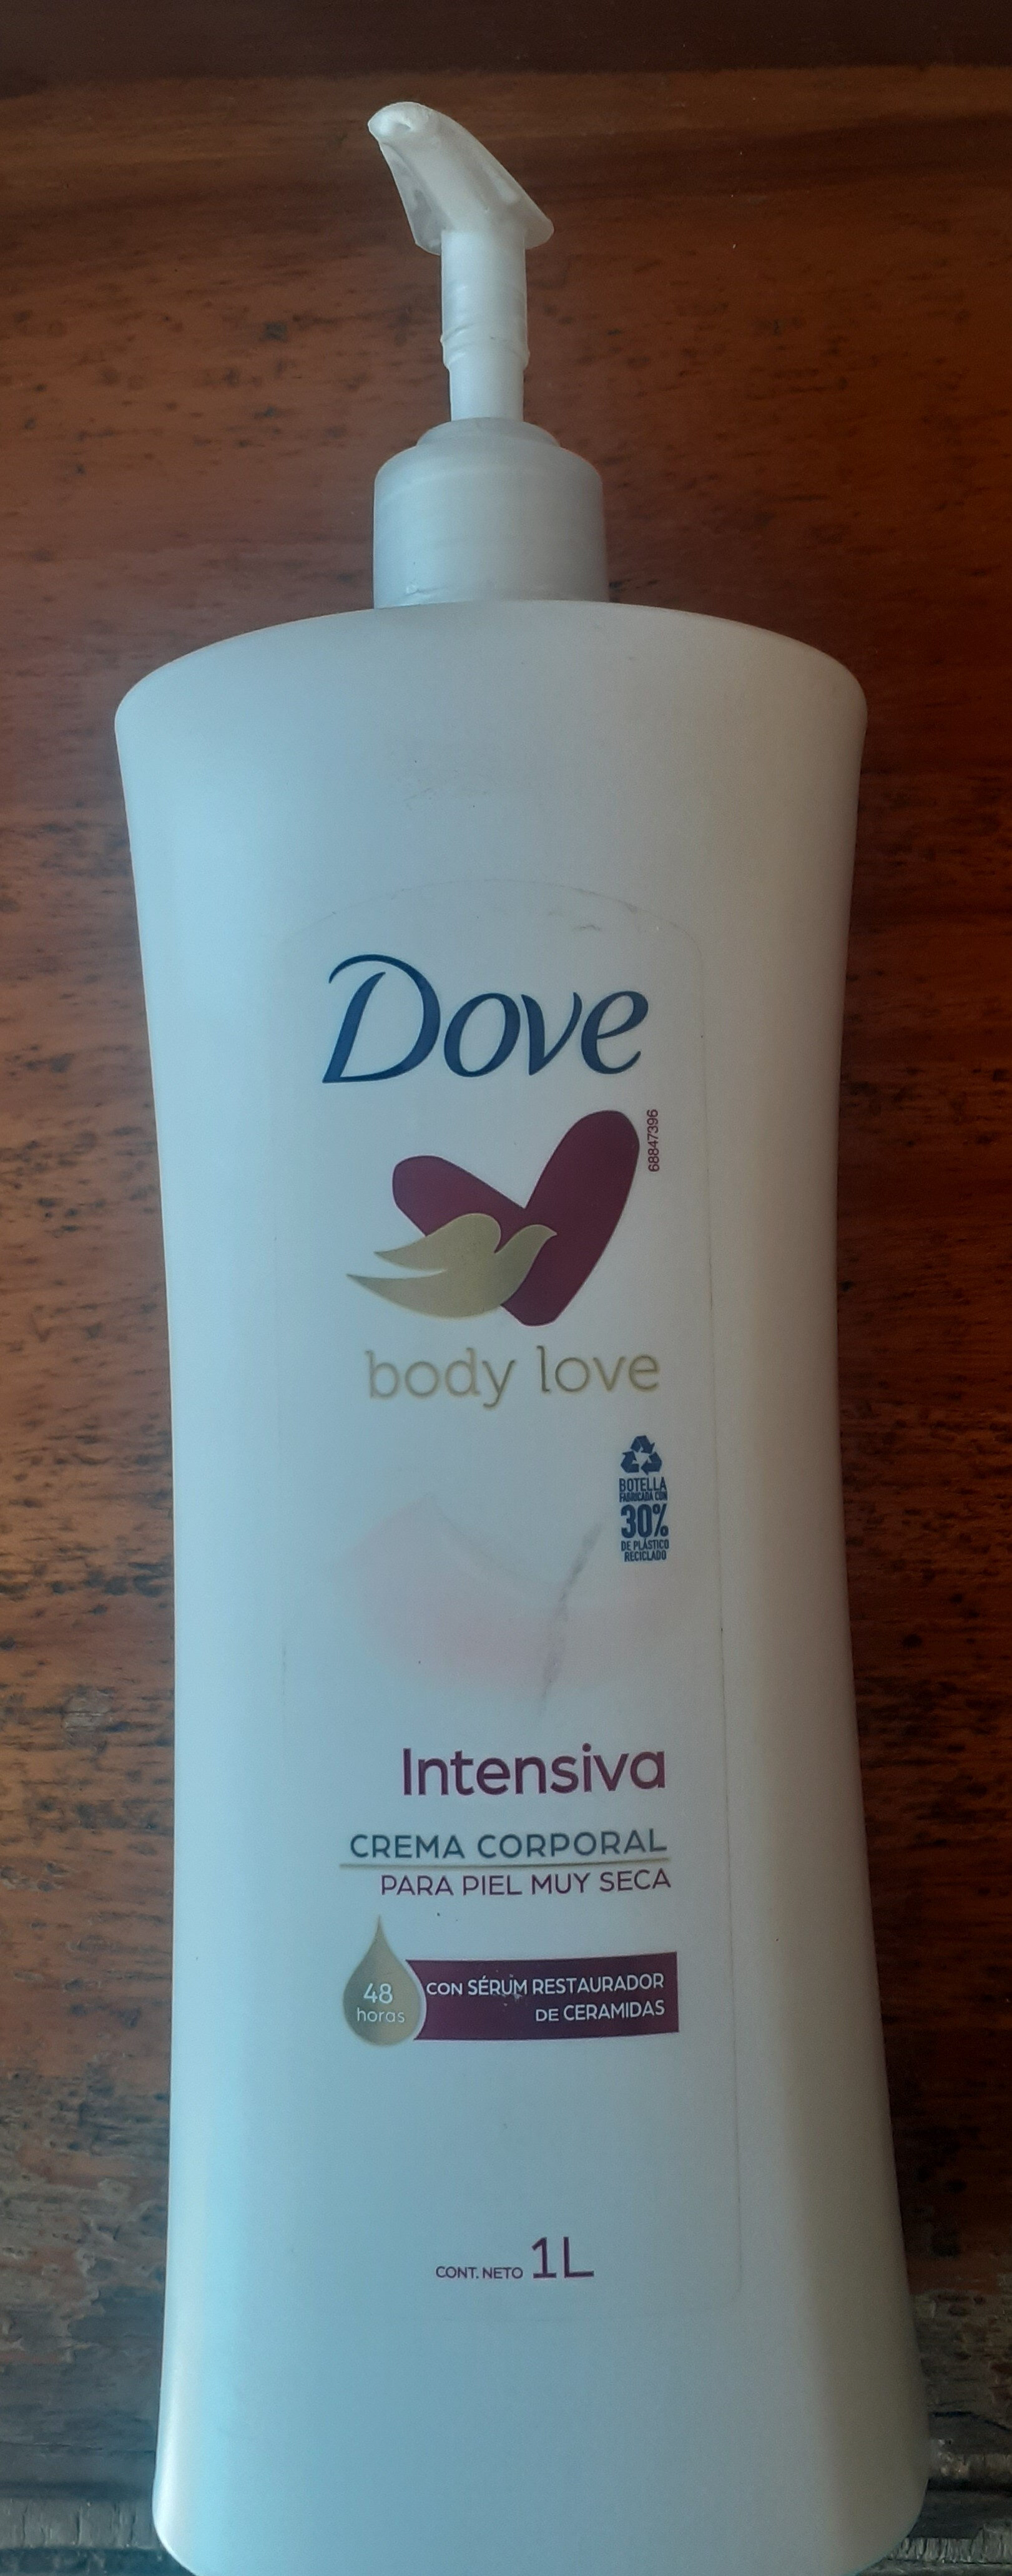 Dove Body Love Intensiva - Produto - es